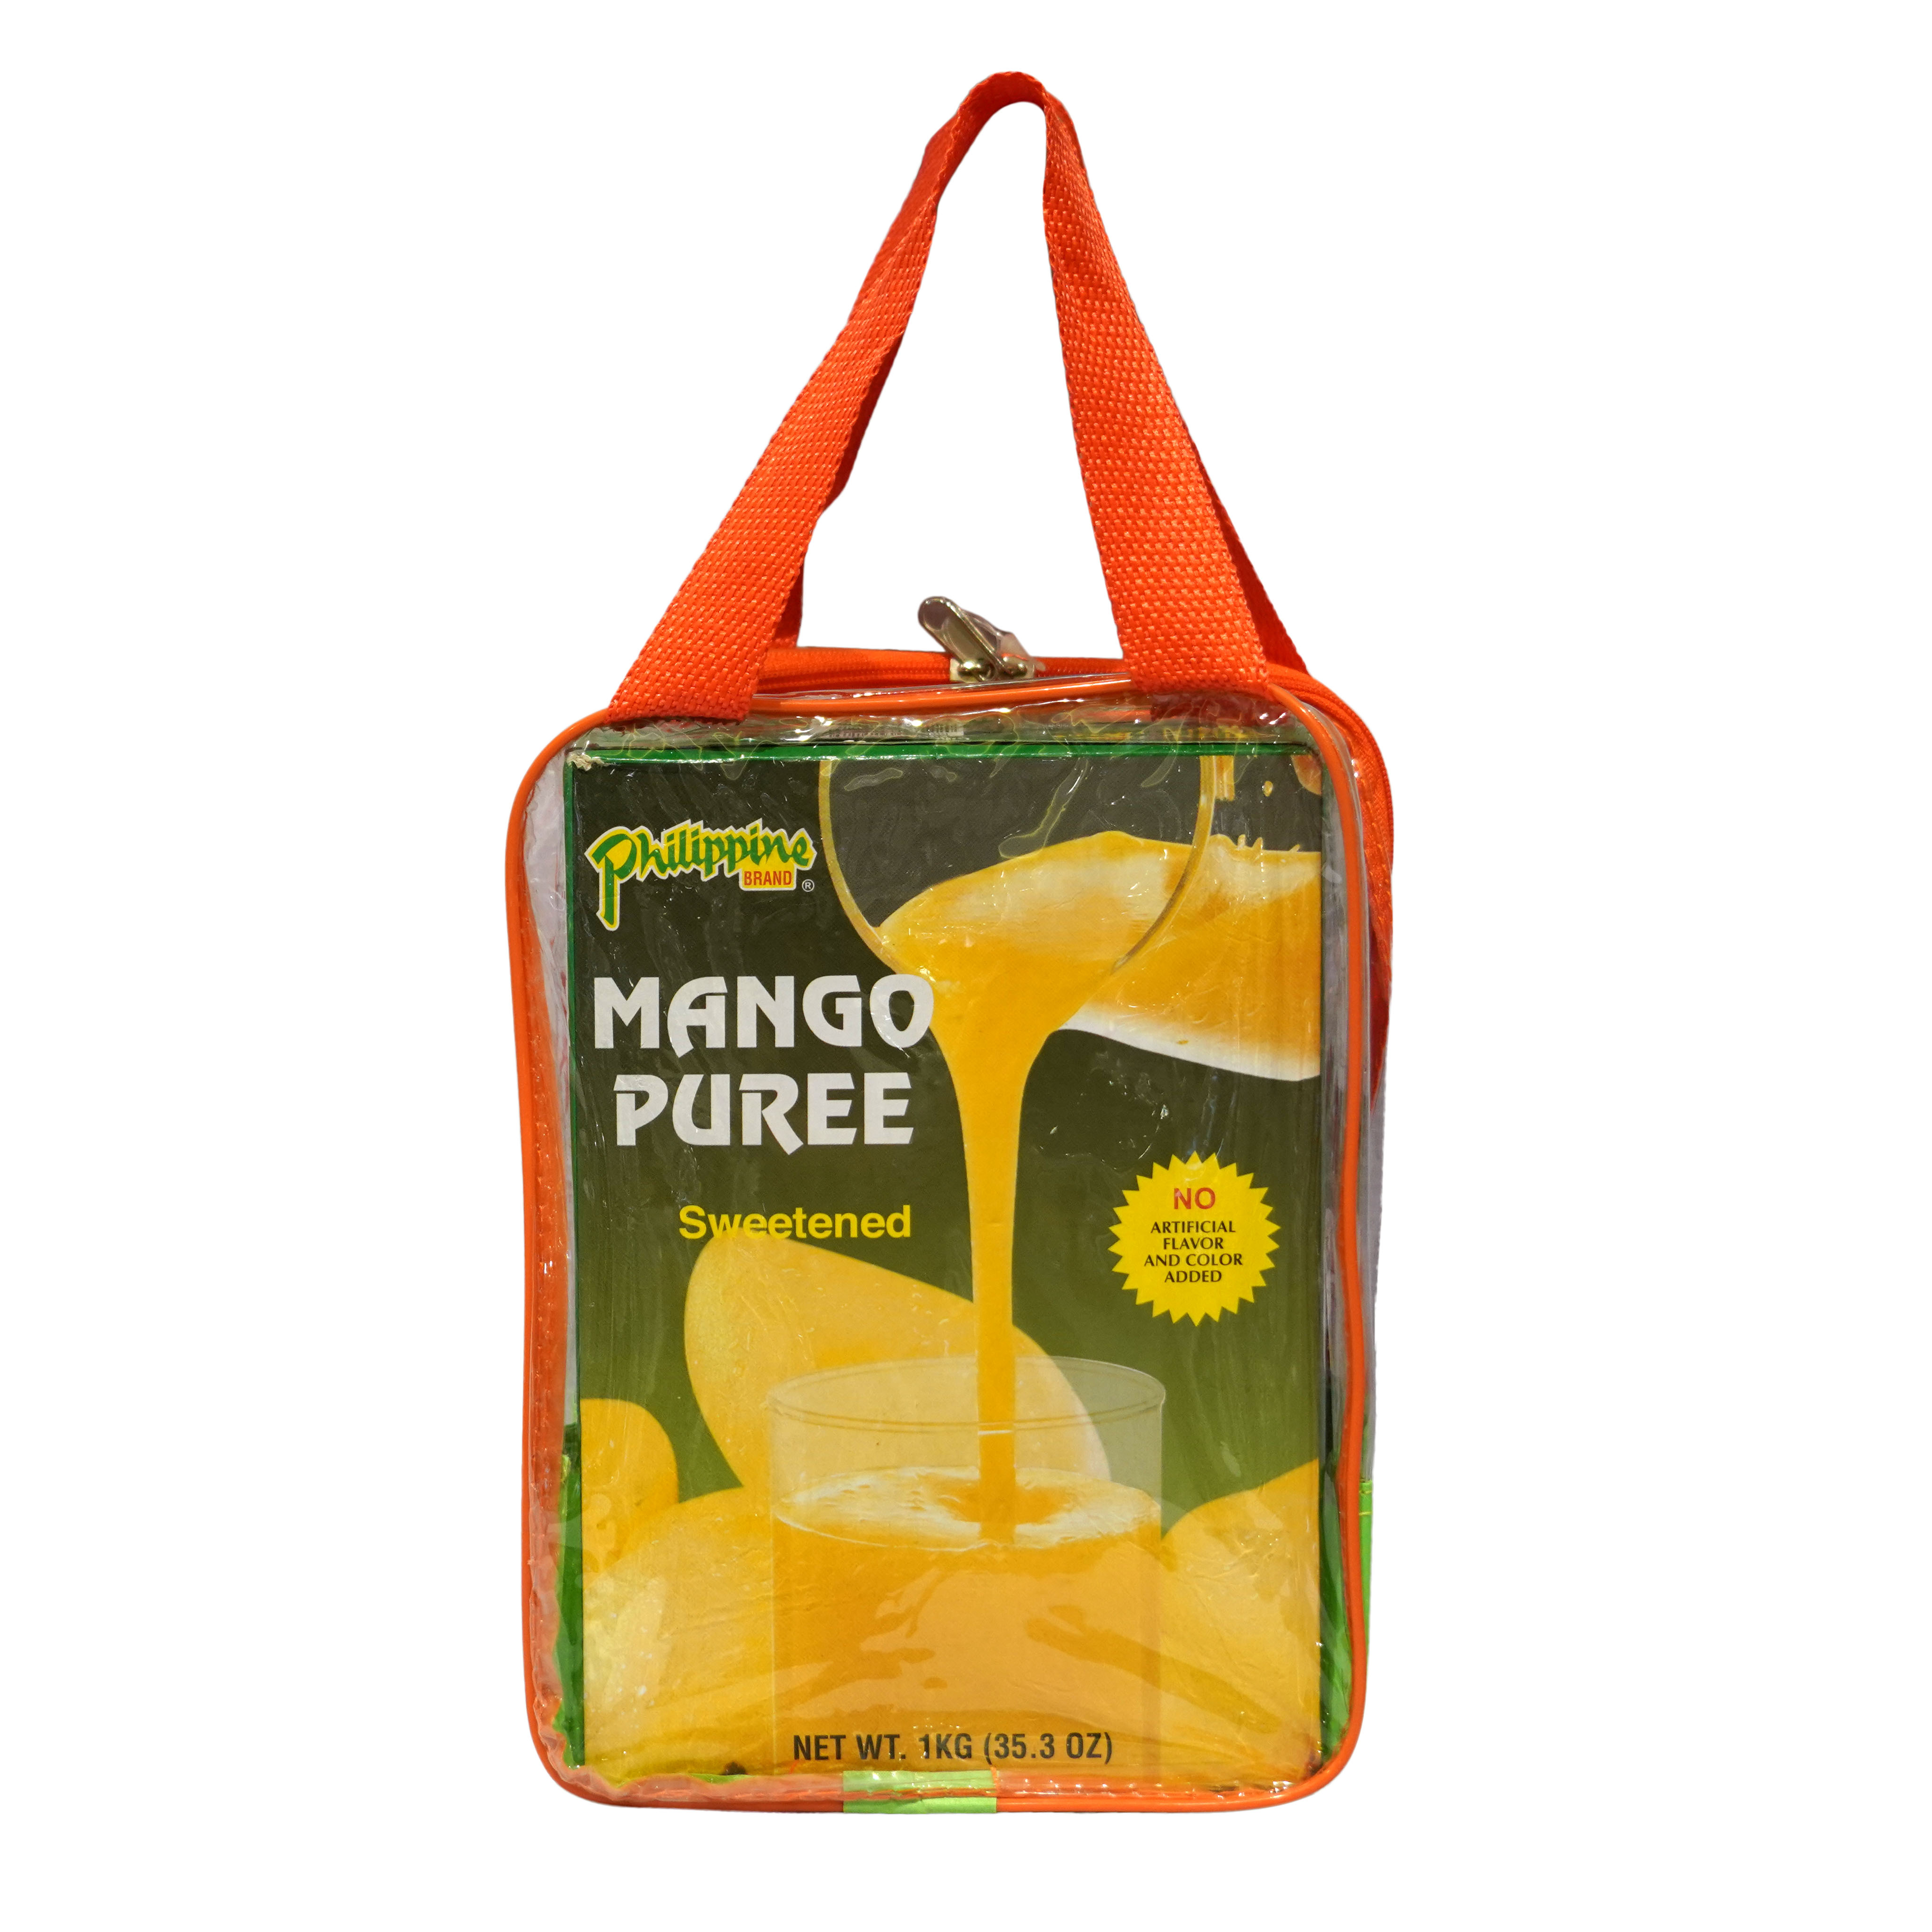 Philippine Brand Mango Puree Sweetened (2 packs, 1kg each)